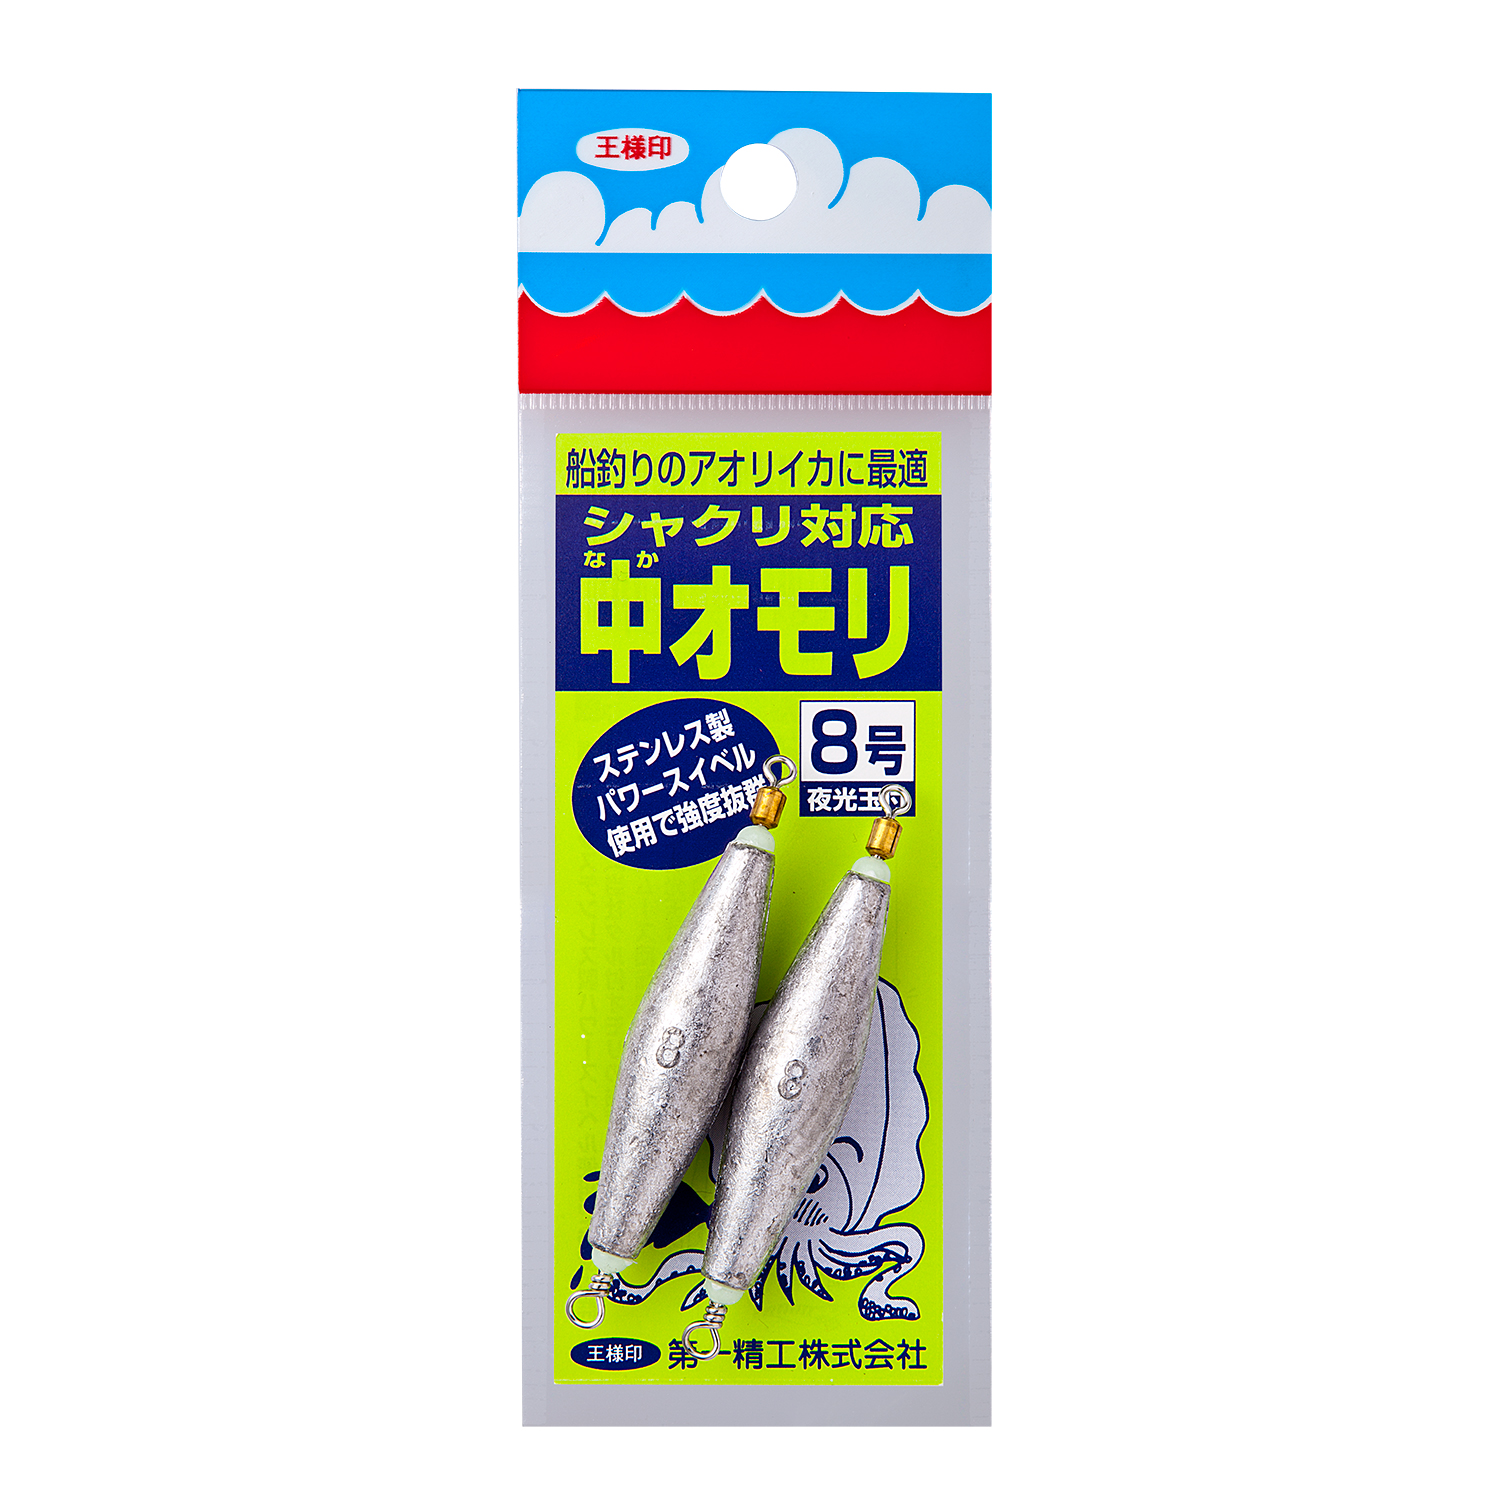 商品詳細 第一精工株式会社 Daiichiseiko Co Ltd 釣具 より良い確かな釣用品